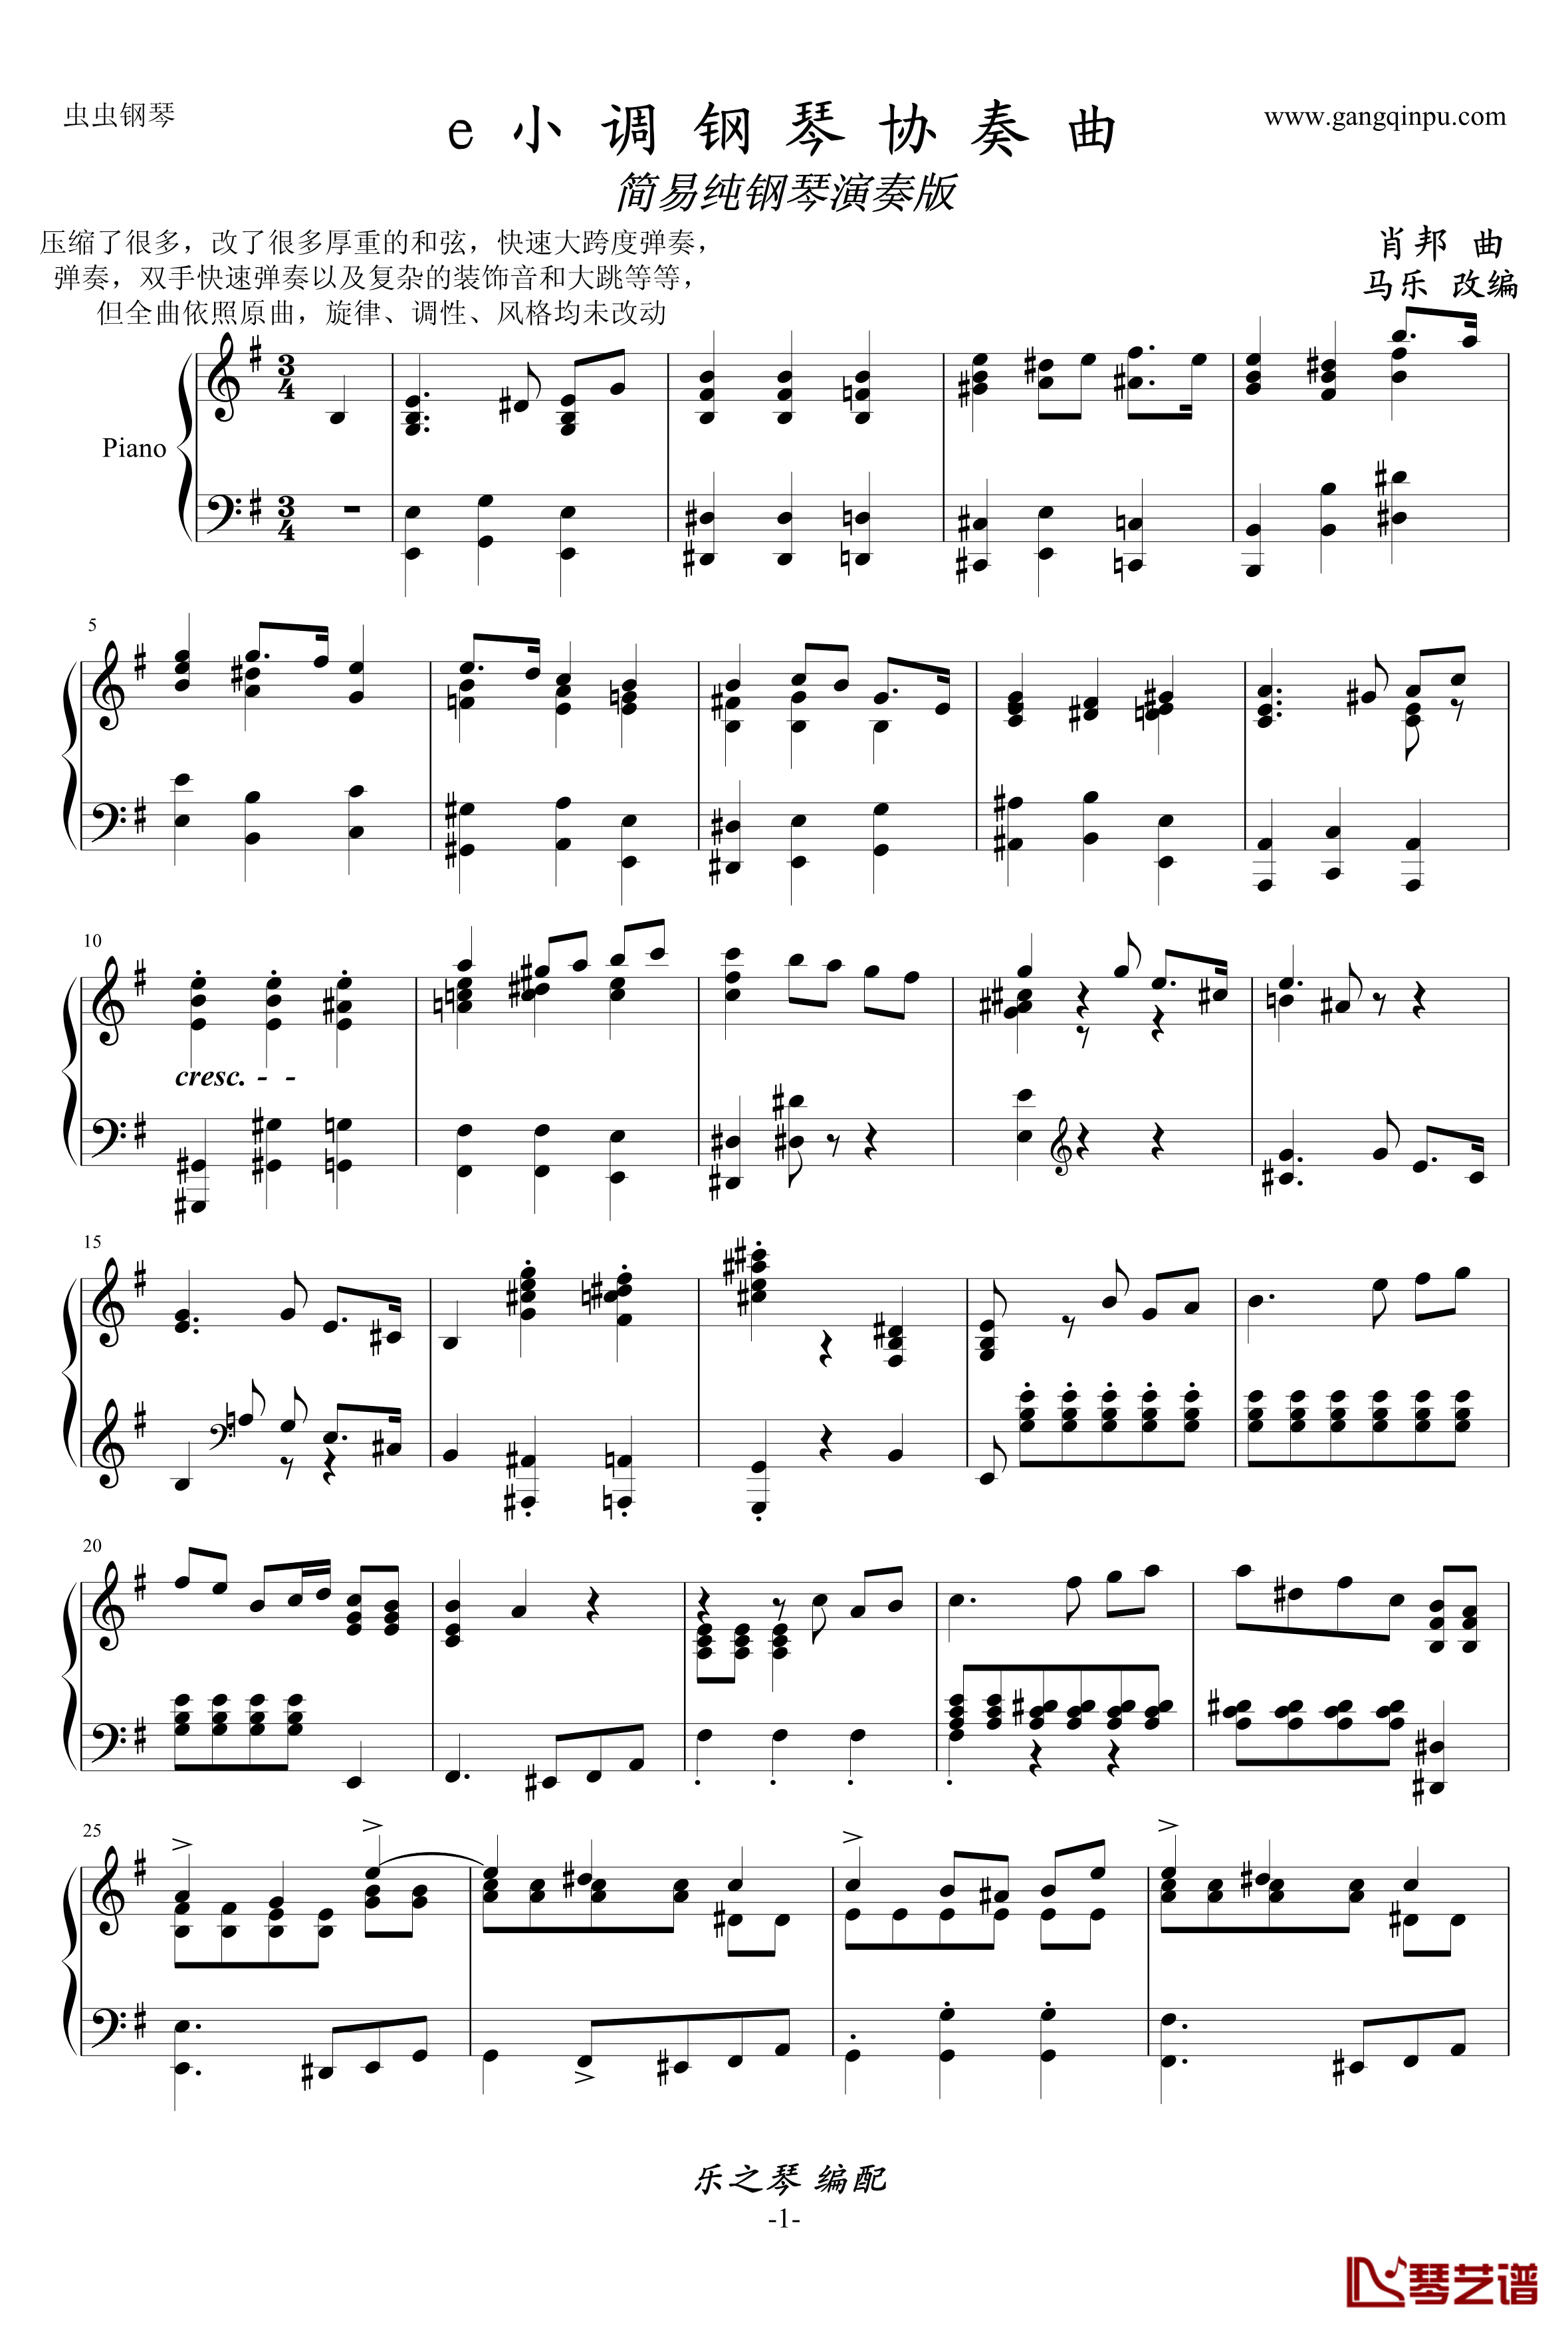 e小调钢琴协奏曲钢琴谱-乐之琴简易钢琴版-肖邦-chopin1